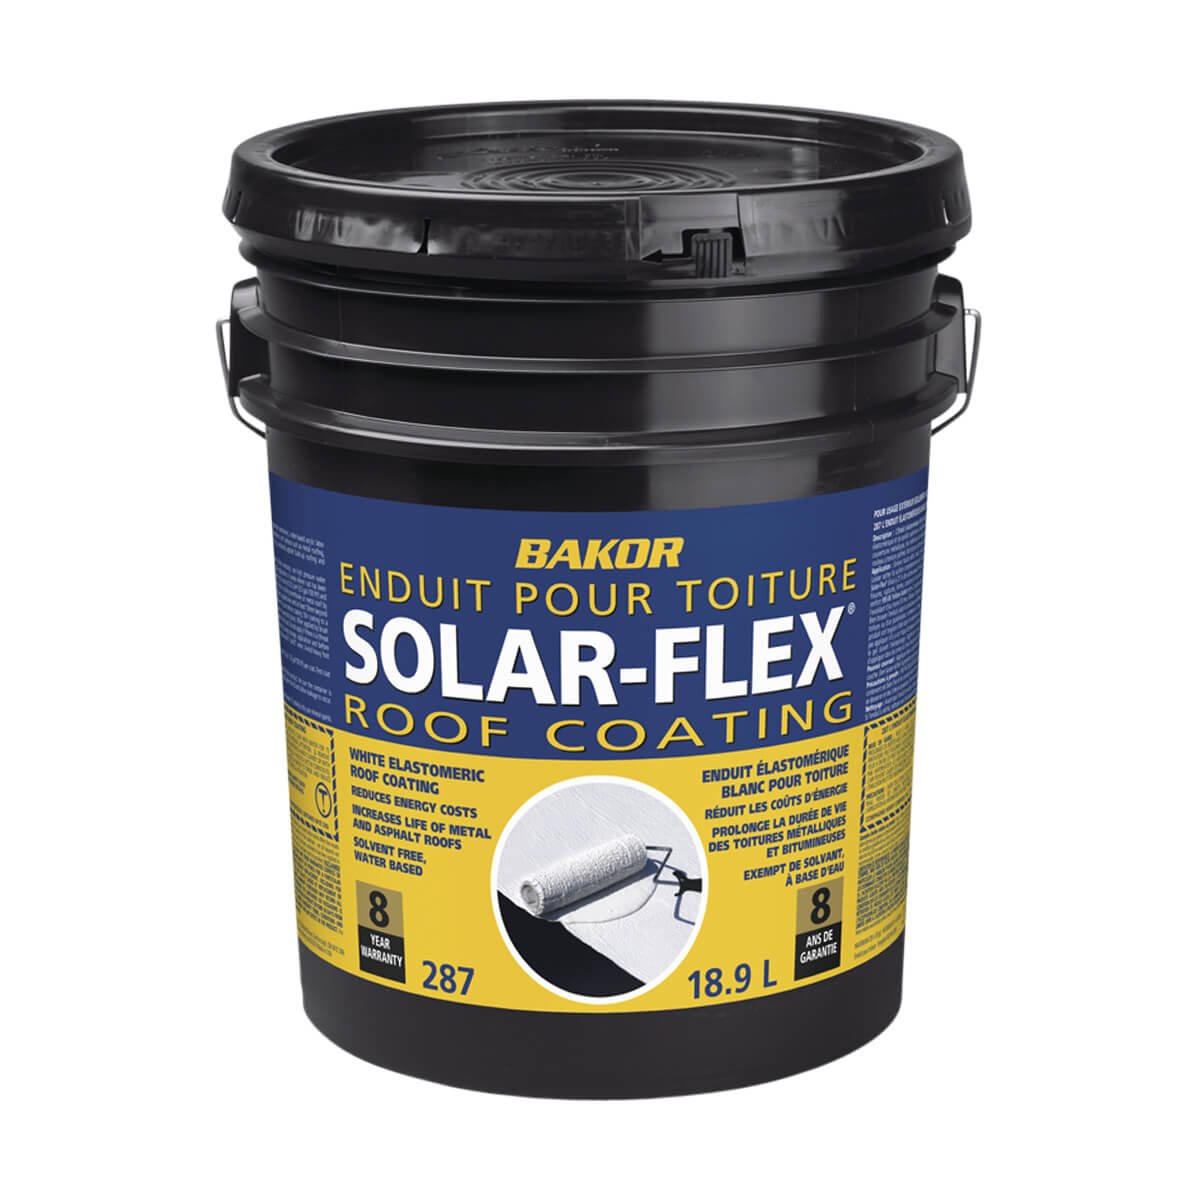 Solar-Flex Roof Coating 18.9 L